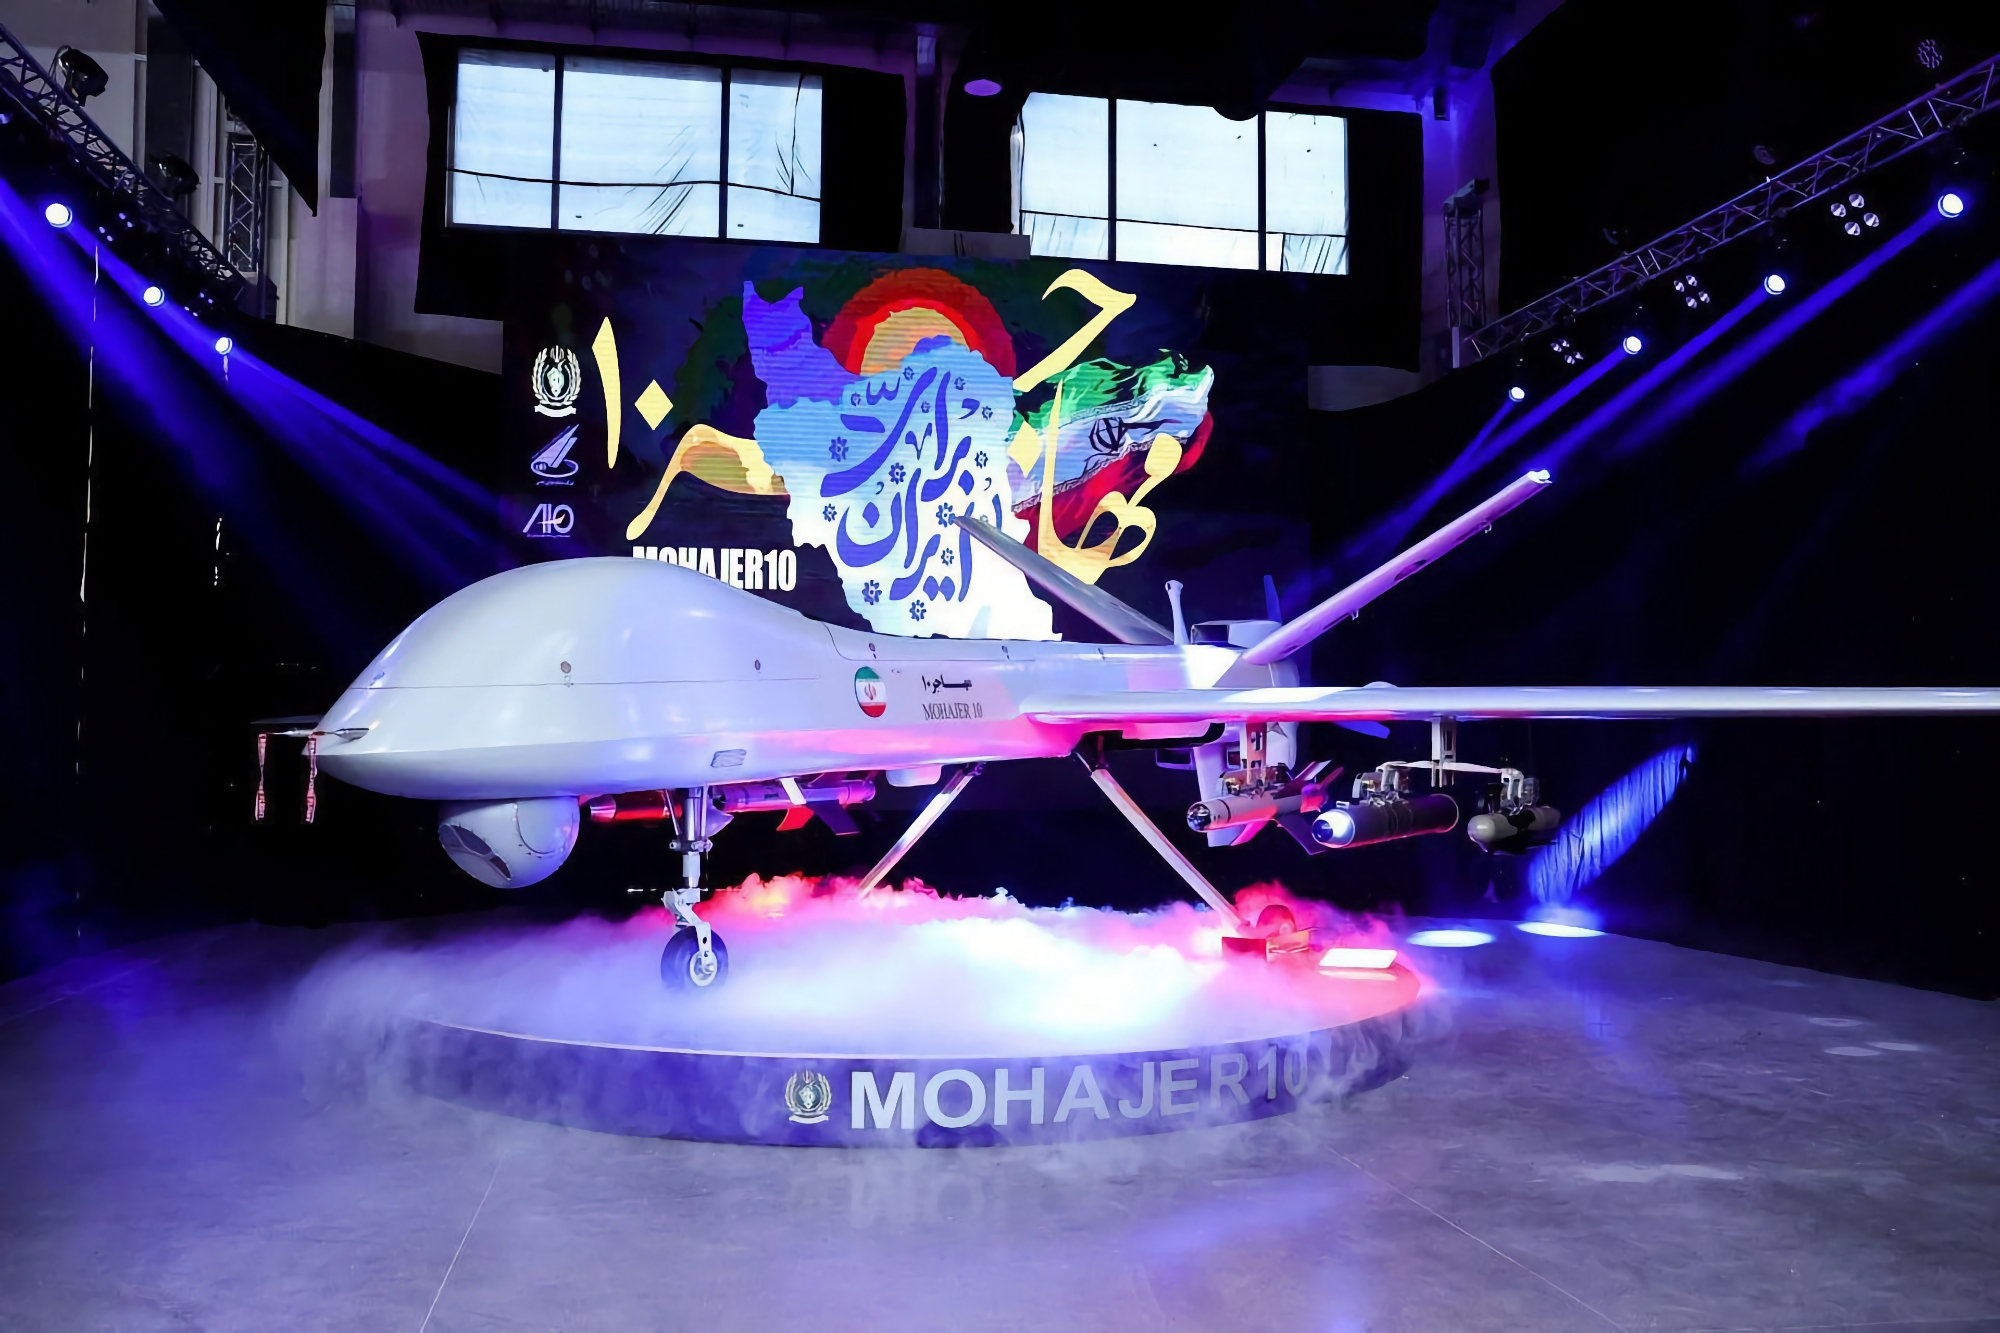 Der Iran hat die Angriffs- und Aufklärungsdrohne Mohajer-10 vorgestellt, die ähnlich wie die MQ-9 Reaper konstruiert ist und mit einer Geschwindigkeit von 210 Kilometern pro Stunde bis zu 2.000 Kilometer weit fliegen kann.